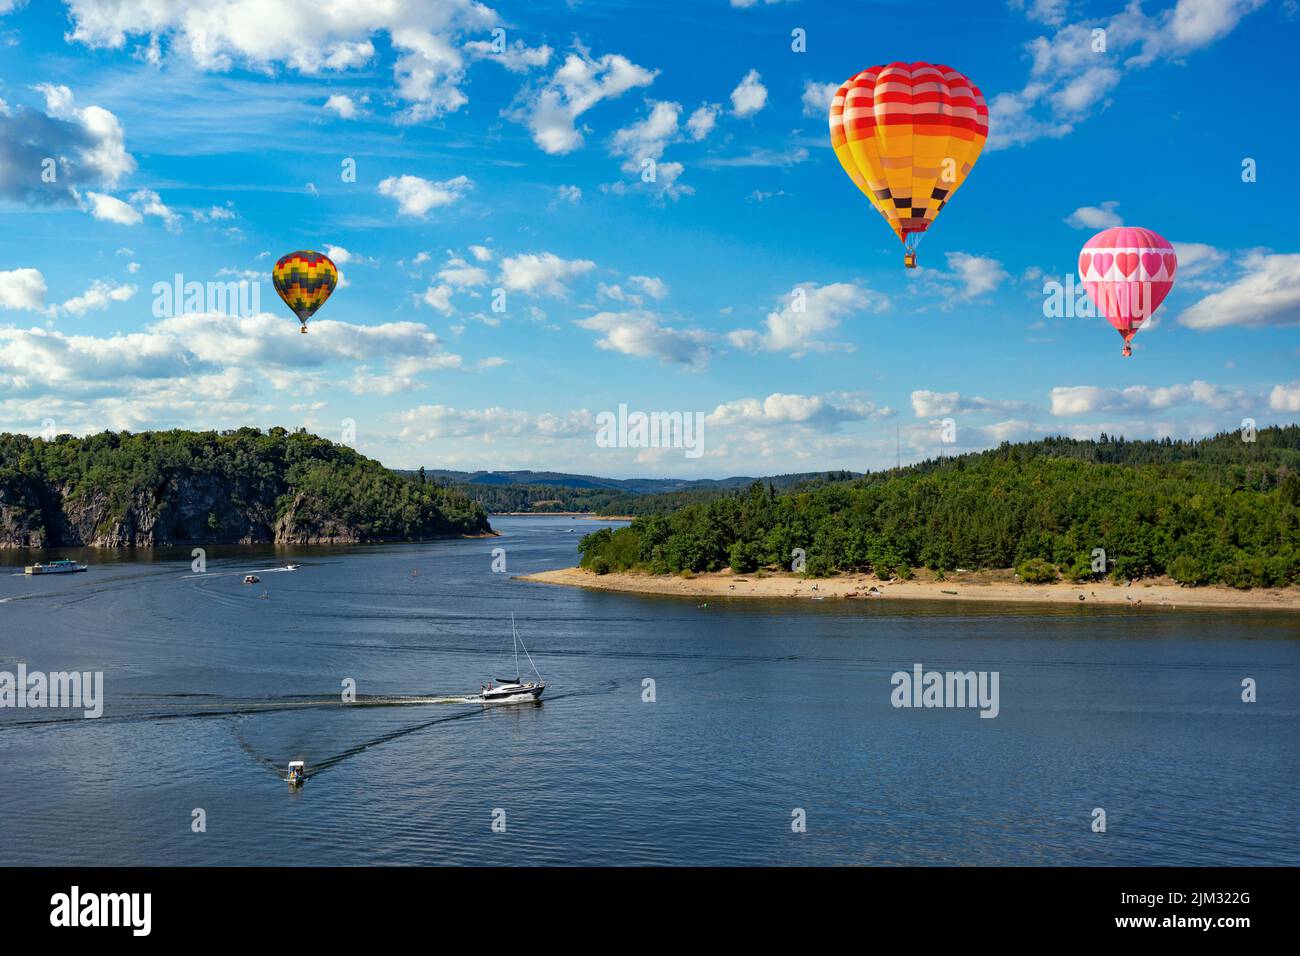 Hot air balloons in the sky over Vltava river near Orlik castle. Czechia Stock Photo